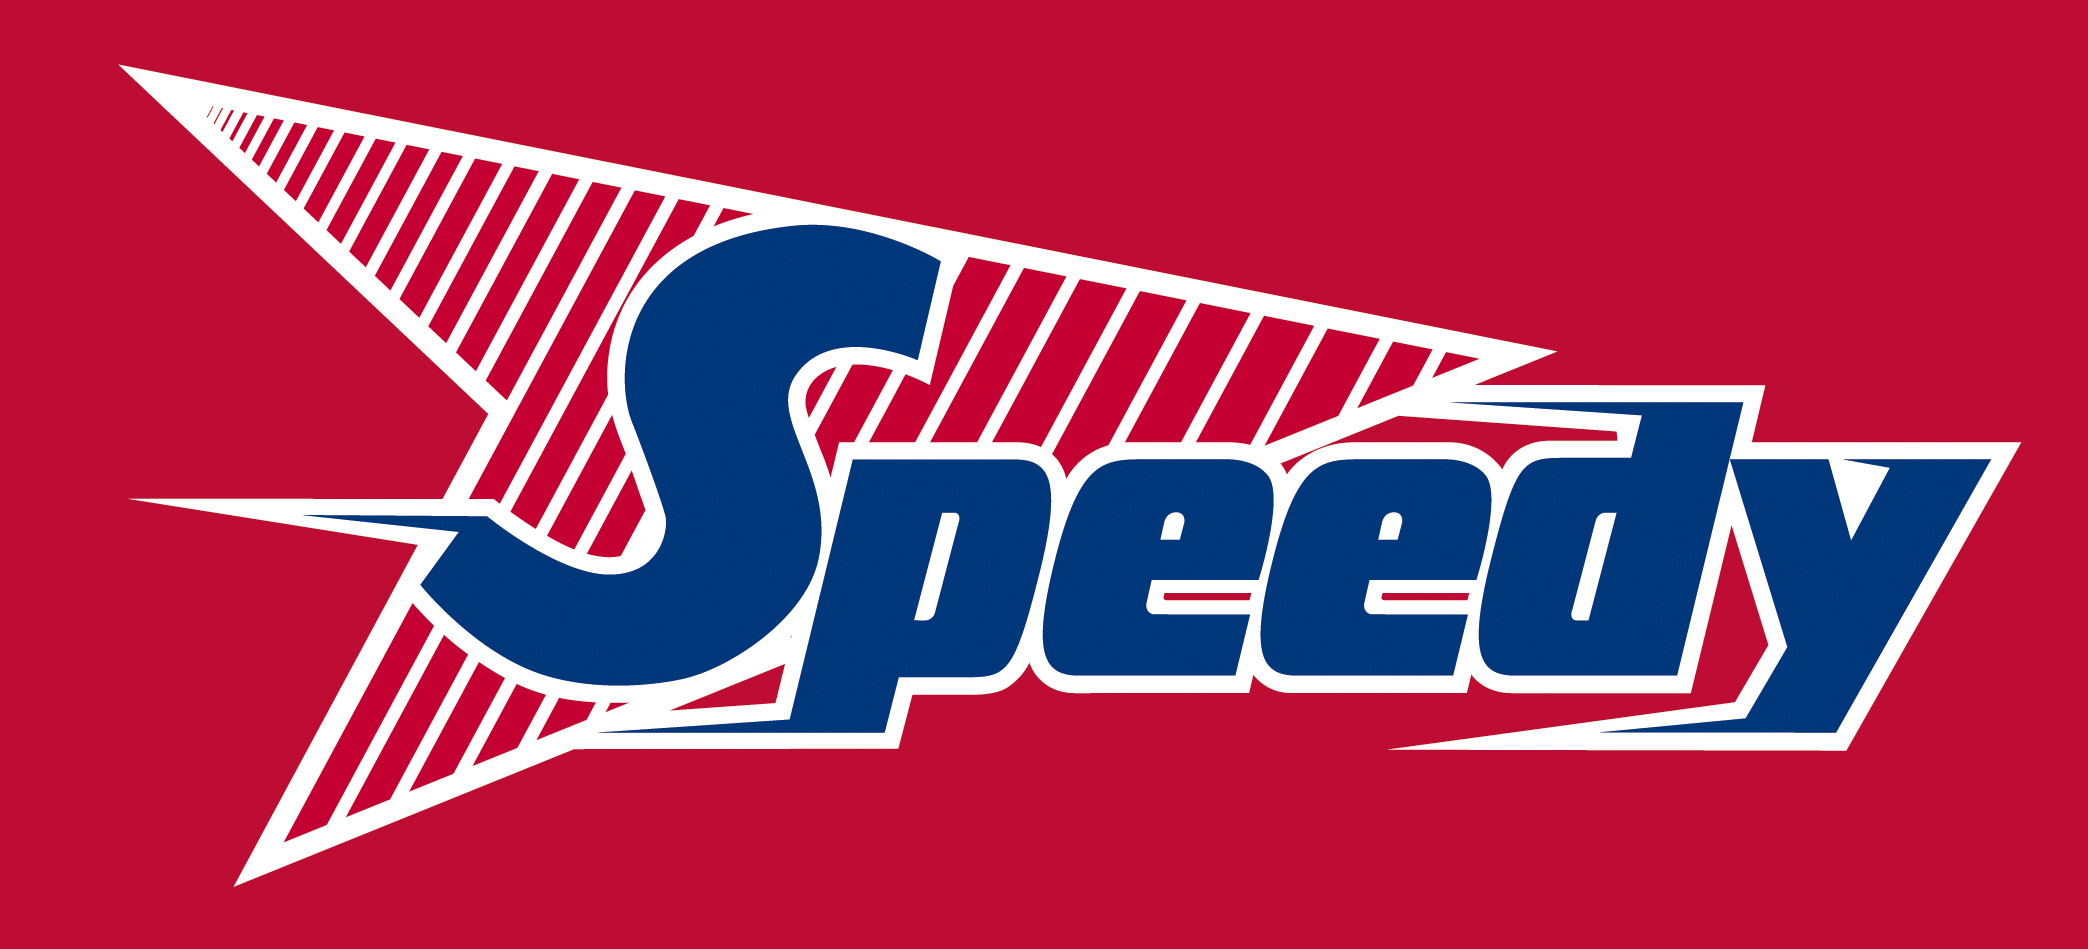 Speedy  - từ vựng tiếng Anh về tốc độ nhanh